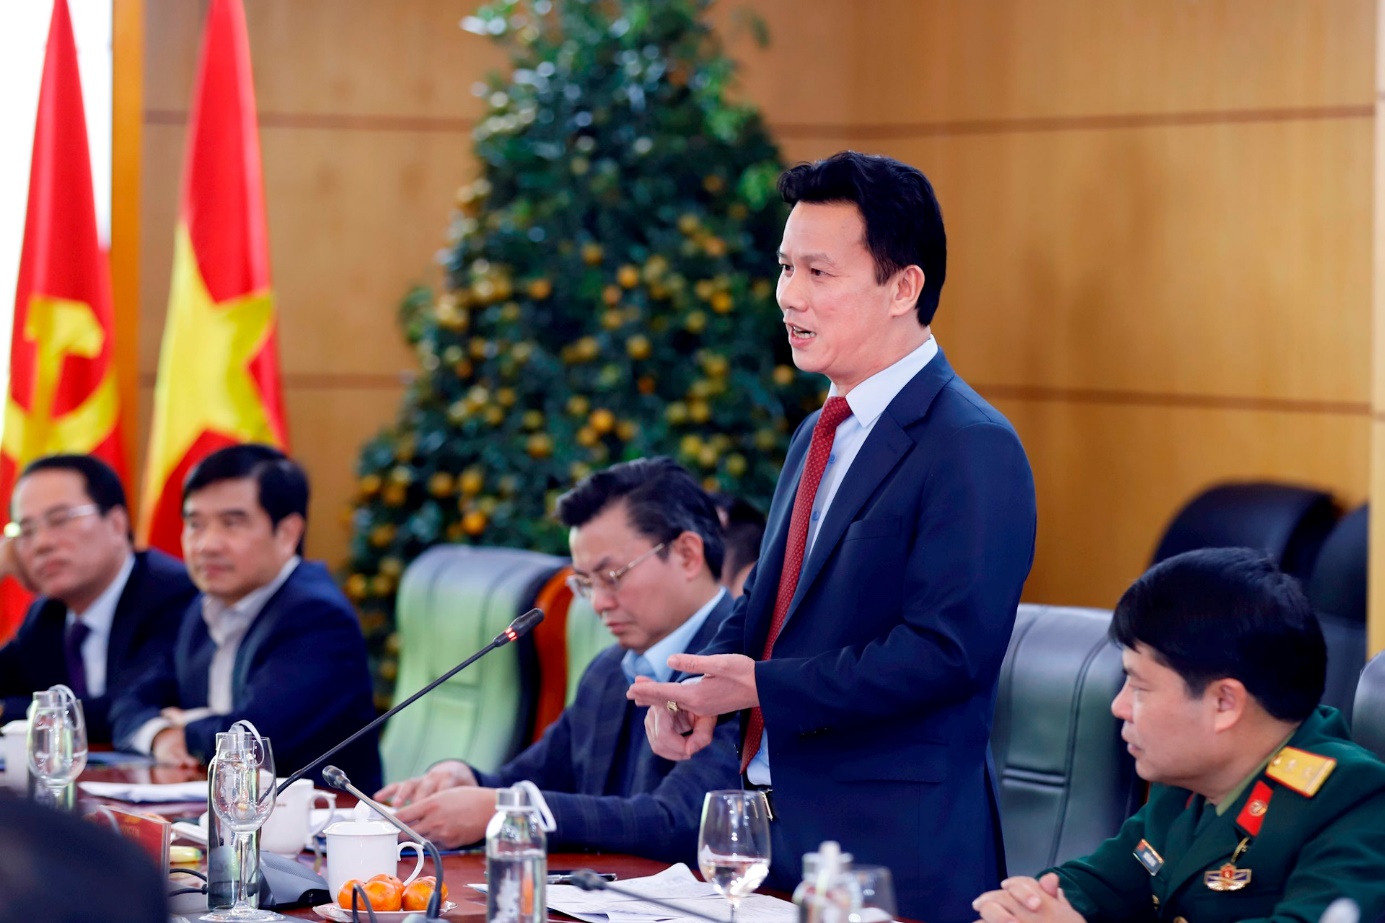 Bộ Tài nguyên và Môi trường, Hội Cựu chiến binh Việt Nam ký kết hợp tác trong ứng phó biến đổi khí hậu- Ảnh 3.